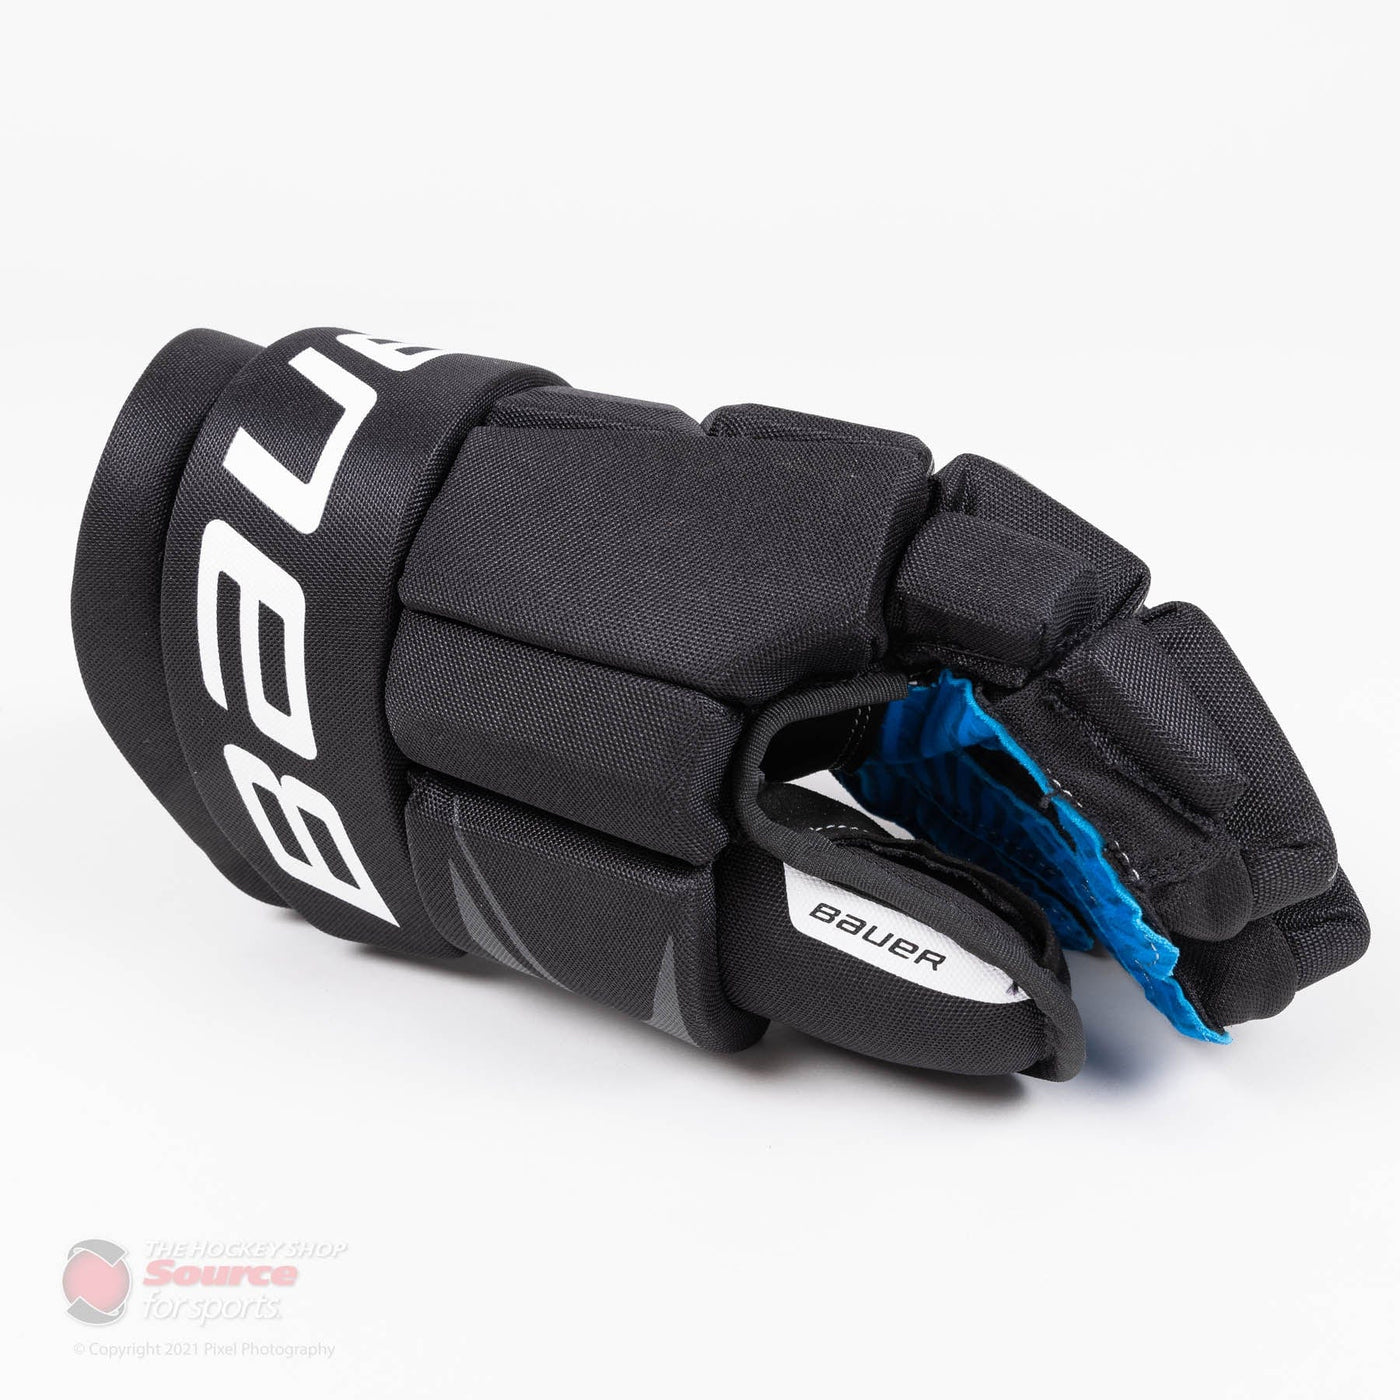 Bauer X Senior Hockey Gloves